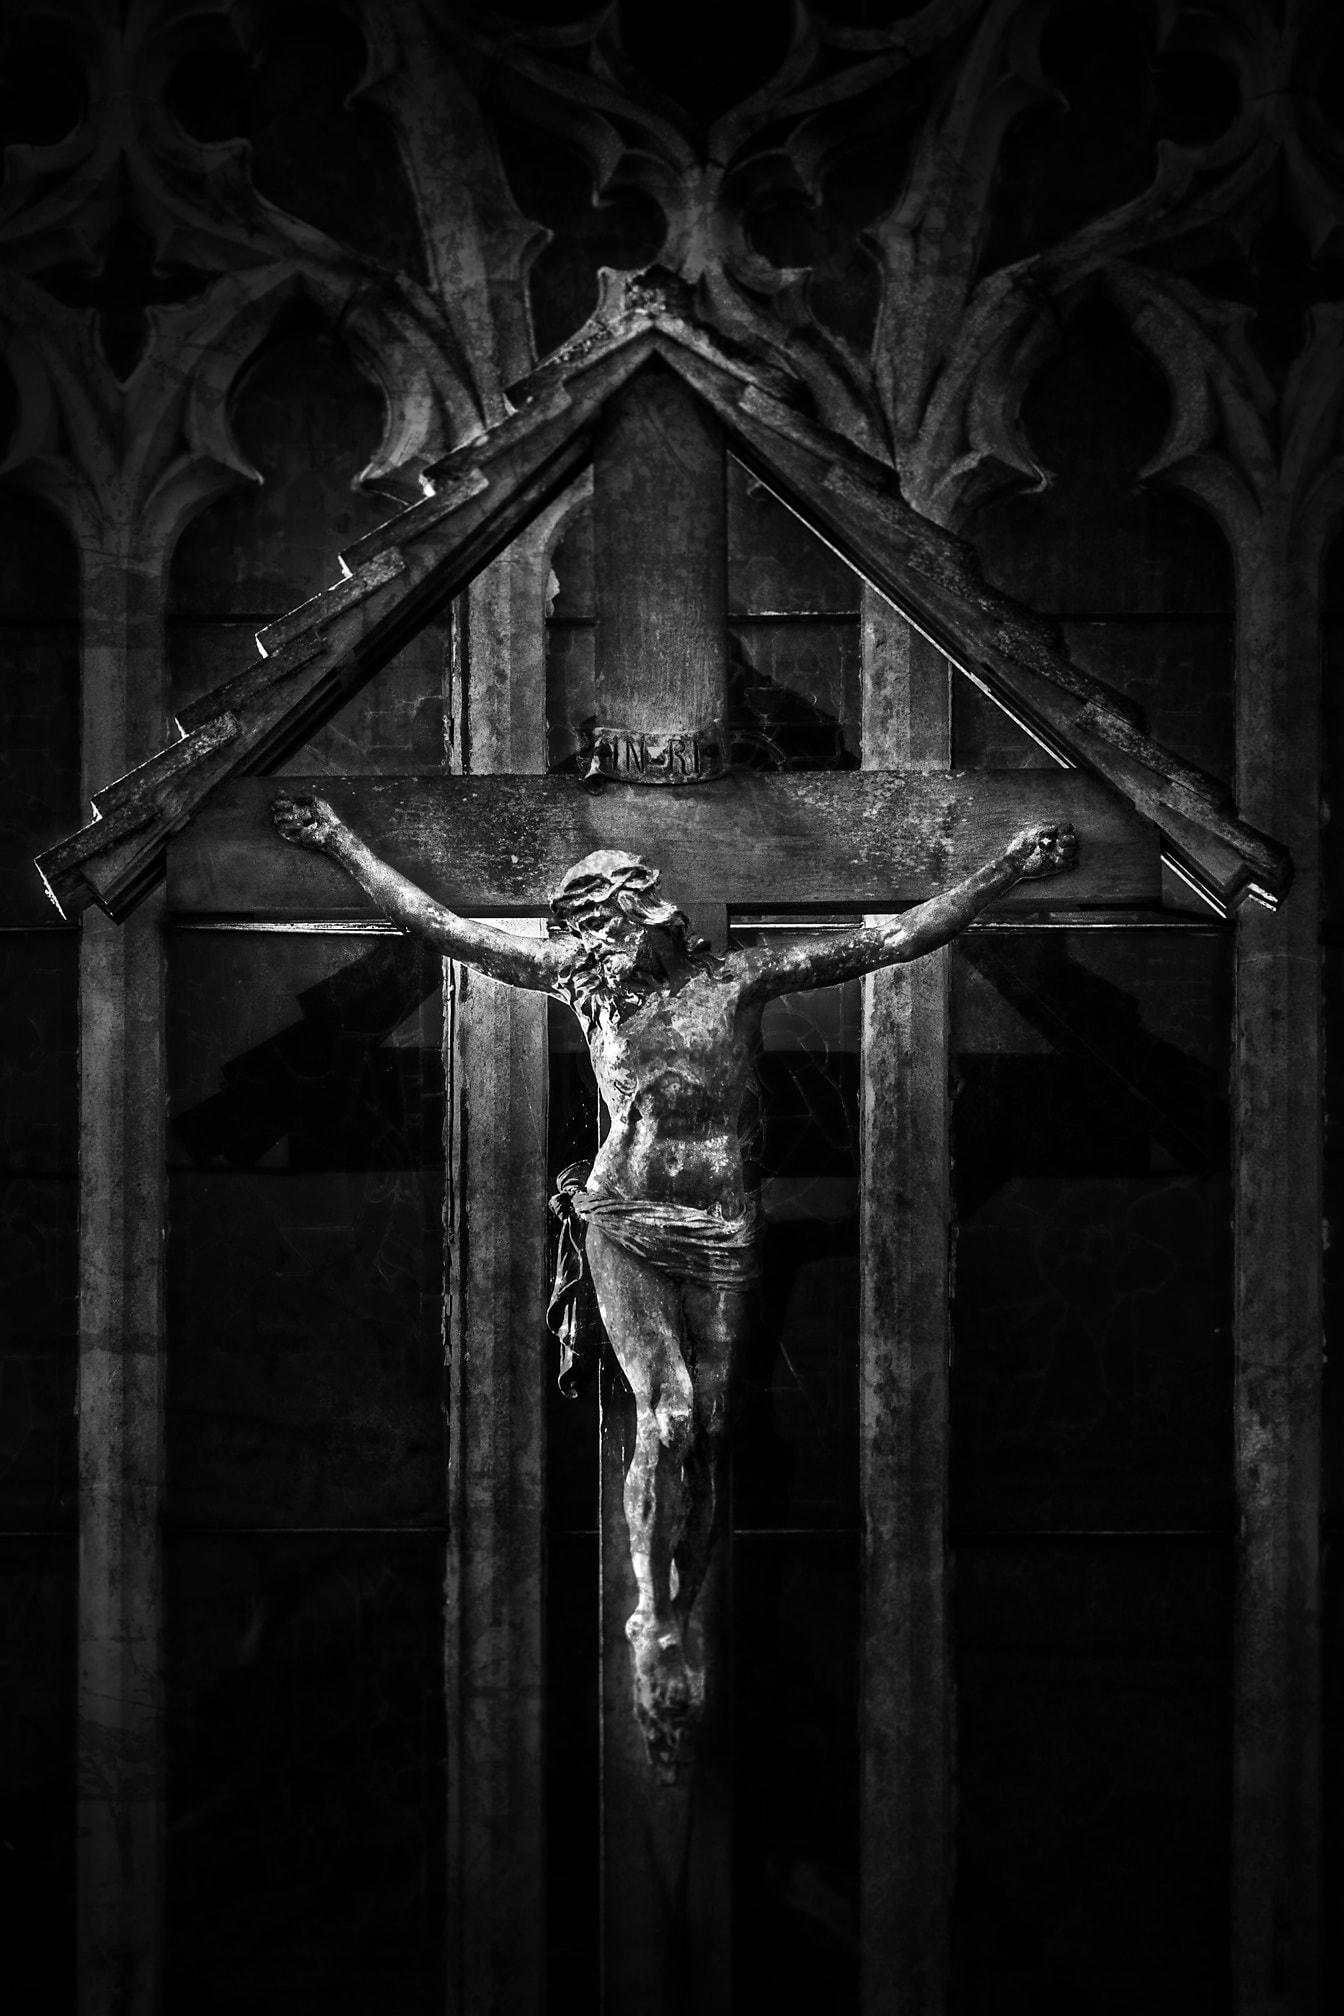 Isus Krist raspeće je na drvenoj križnoj crno-bijeloj fotografiji